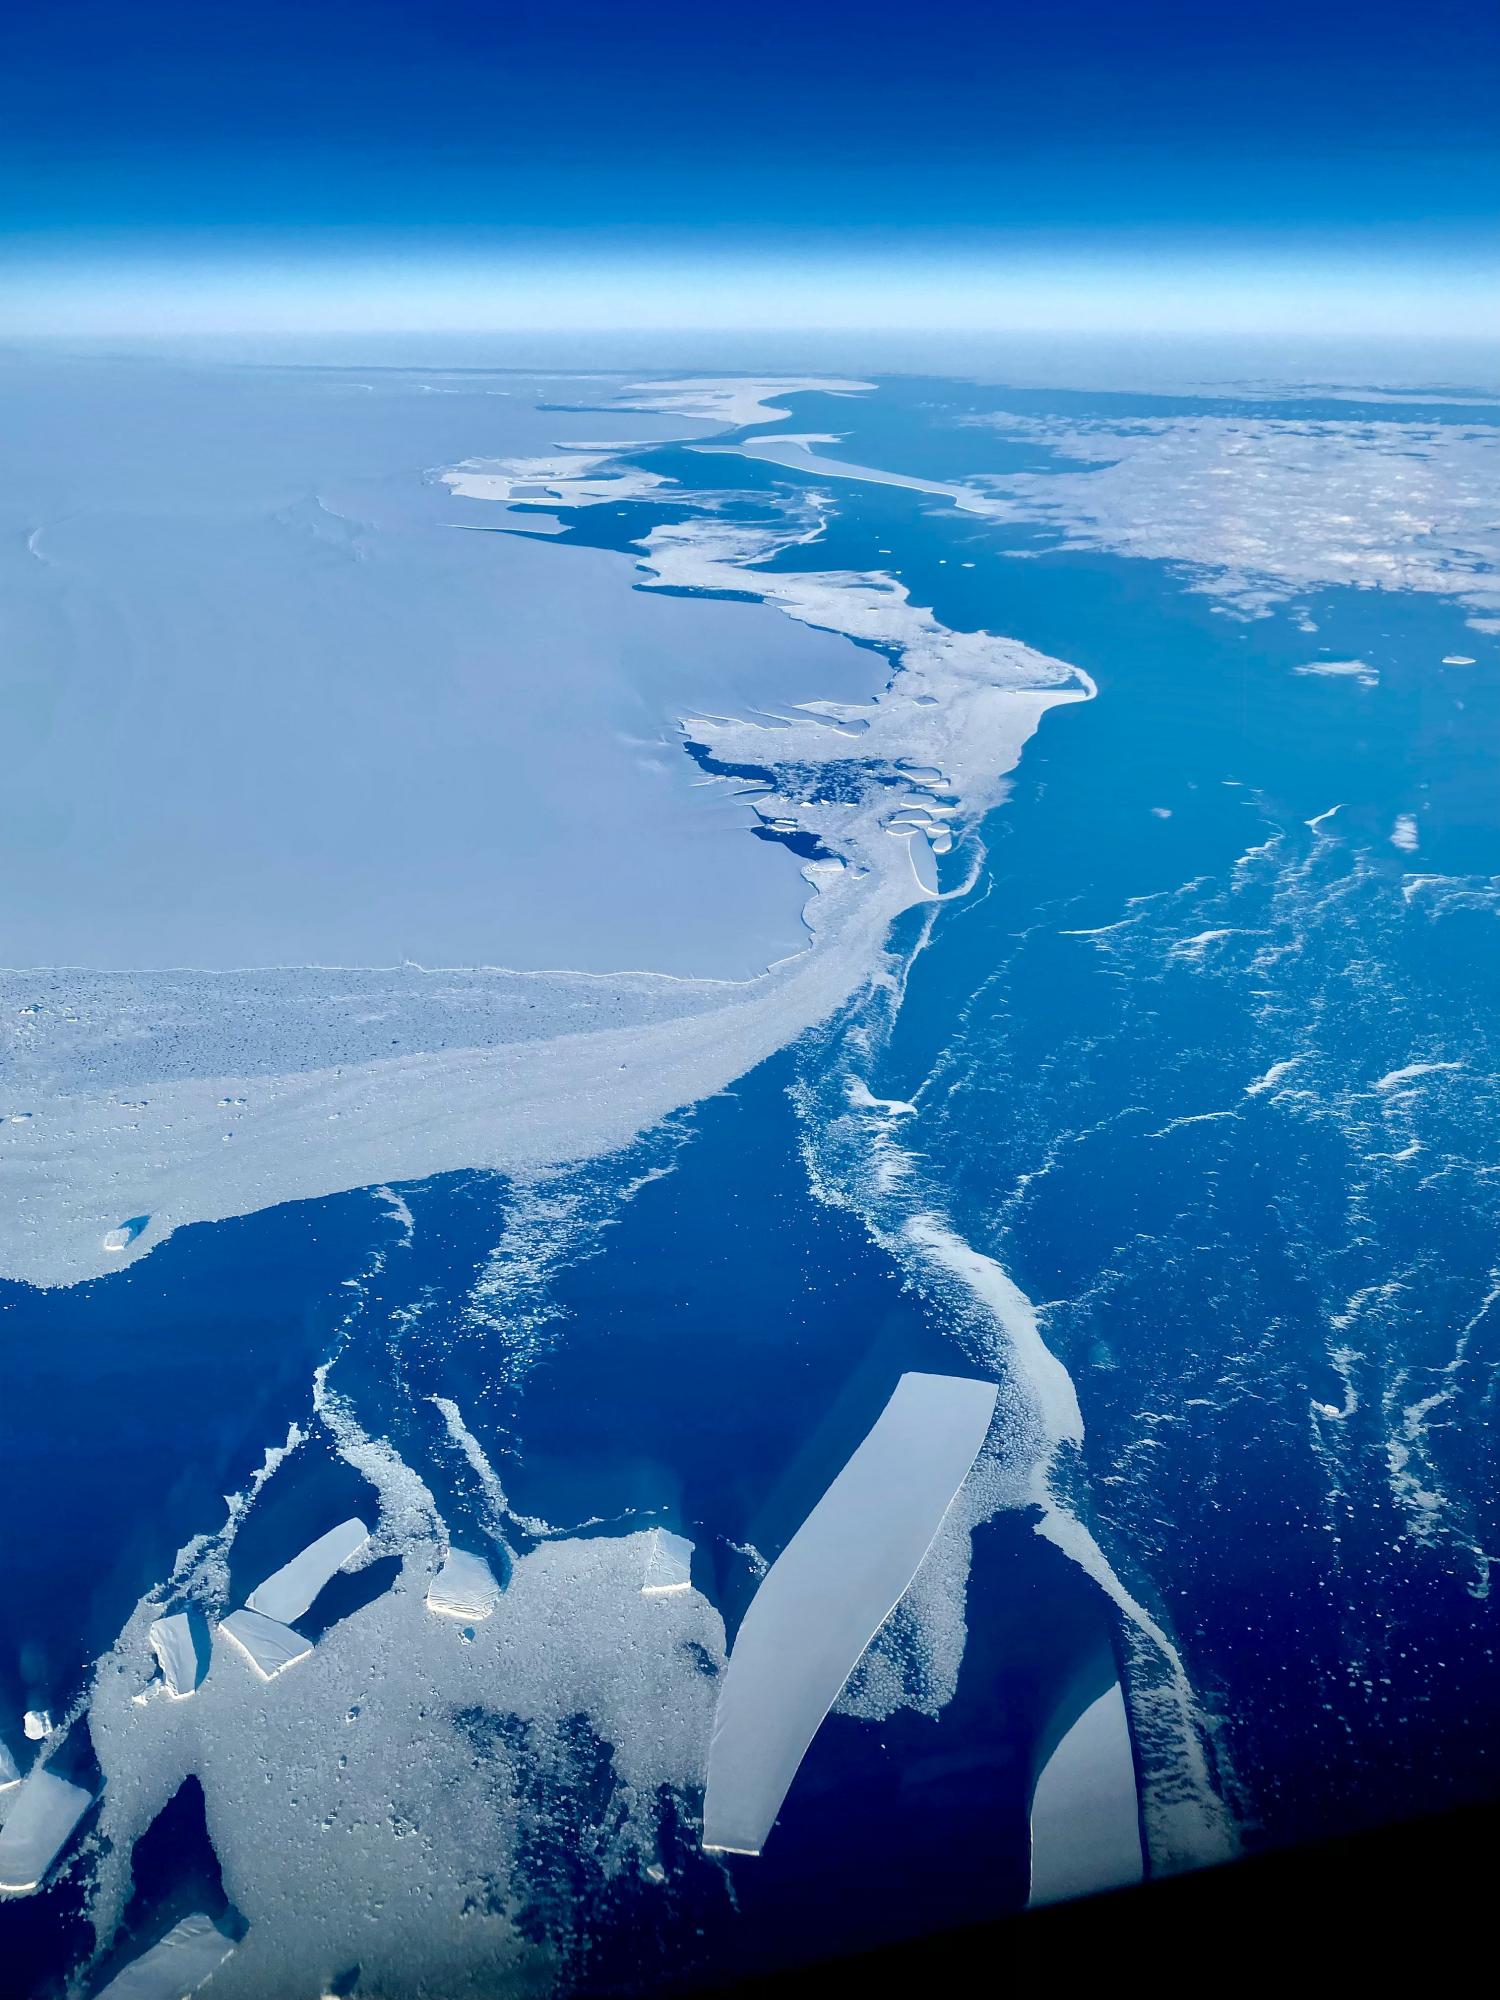 Пилоты показали, как выглядит ледяная взлетно-посадочная полоса в Антарктиде из их кабины